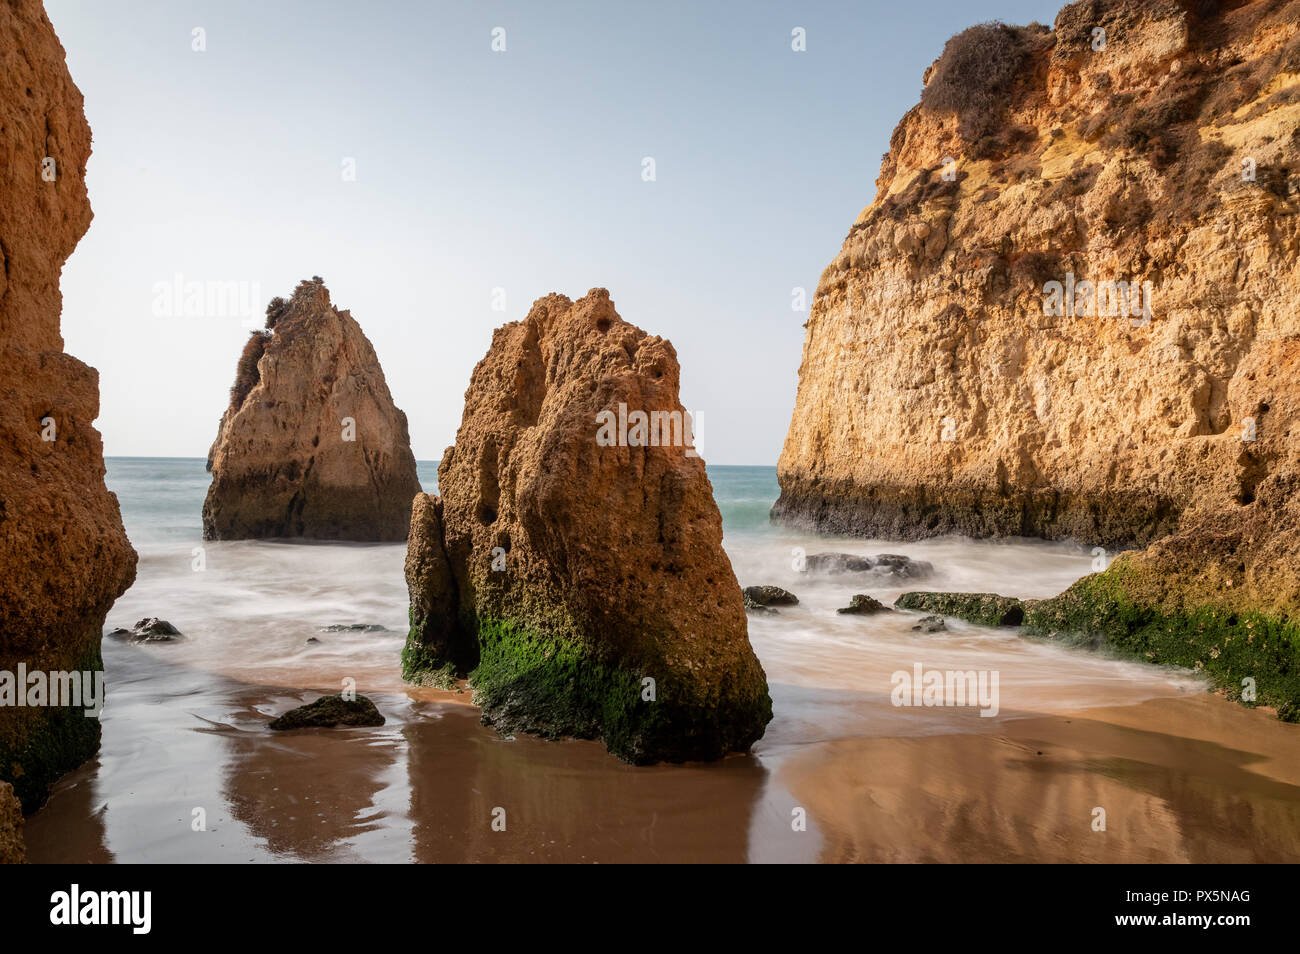 Rock formations at Praia dos Tres Irmaos, Lagoa, Algarve, Portugal Stock Photo